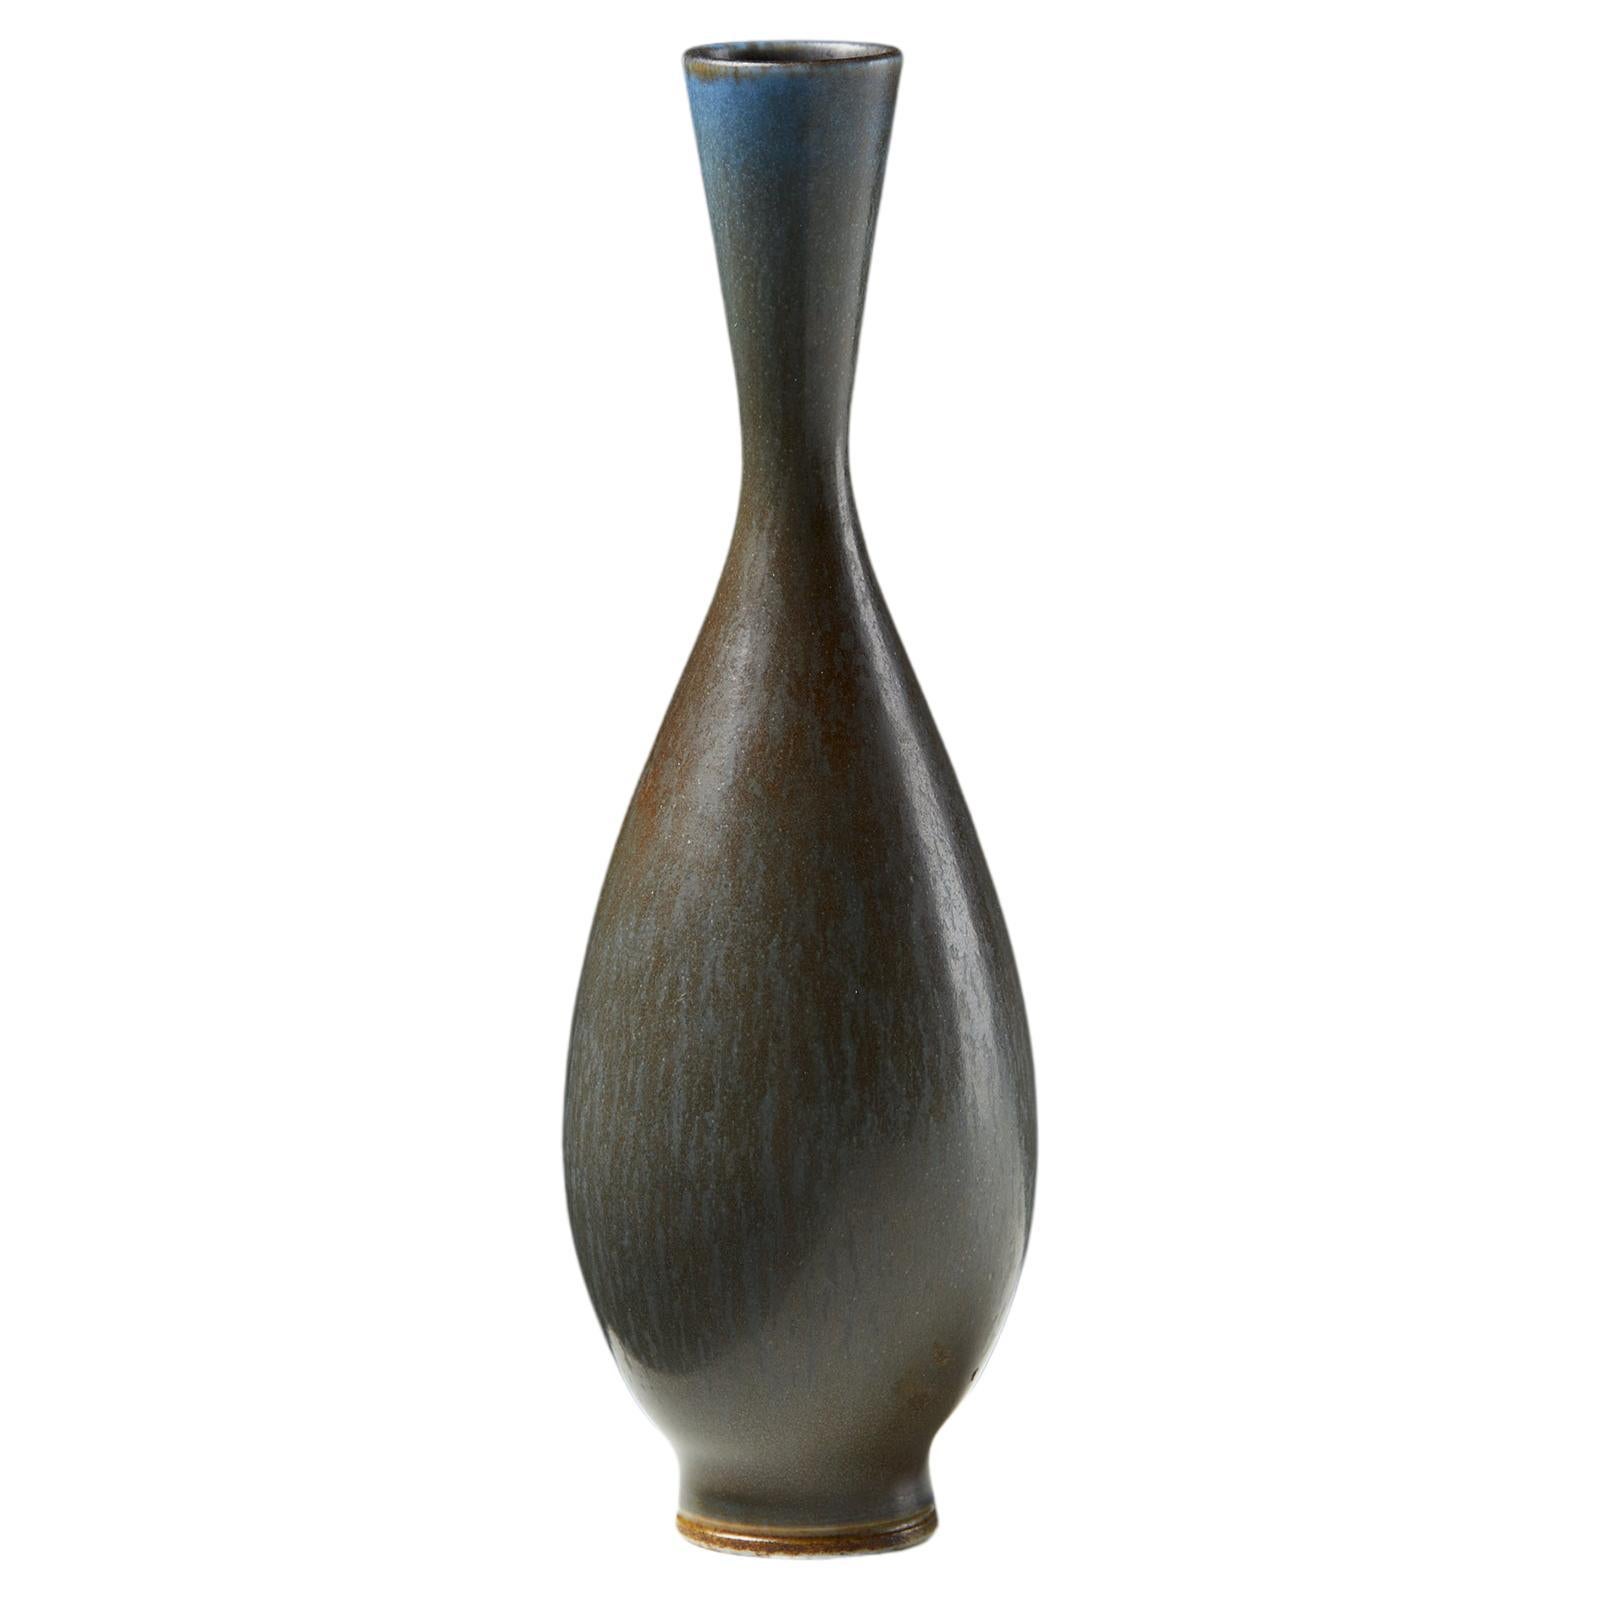 Die Vase wurde von Berndt Friberg für Gustavsberg entworfen, Schweden, 1960er Jahre